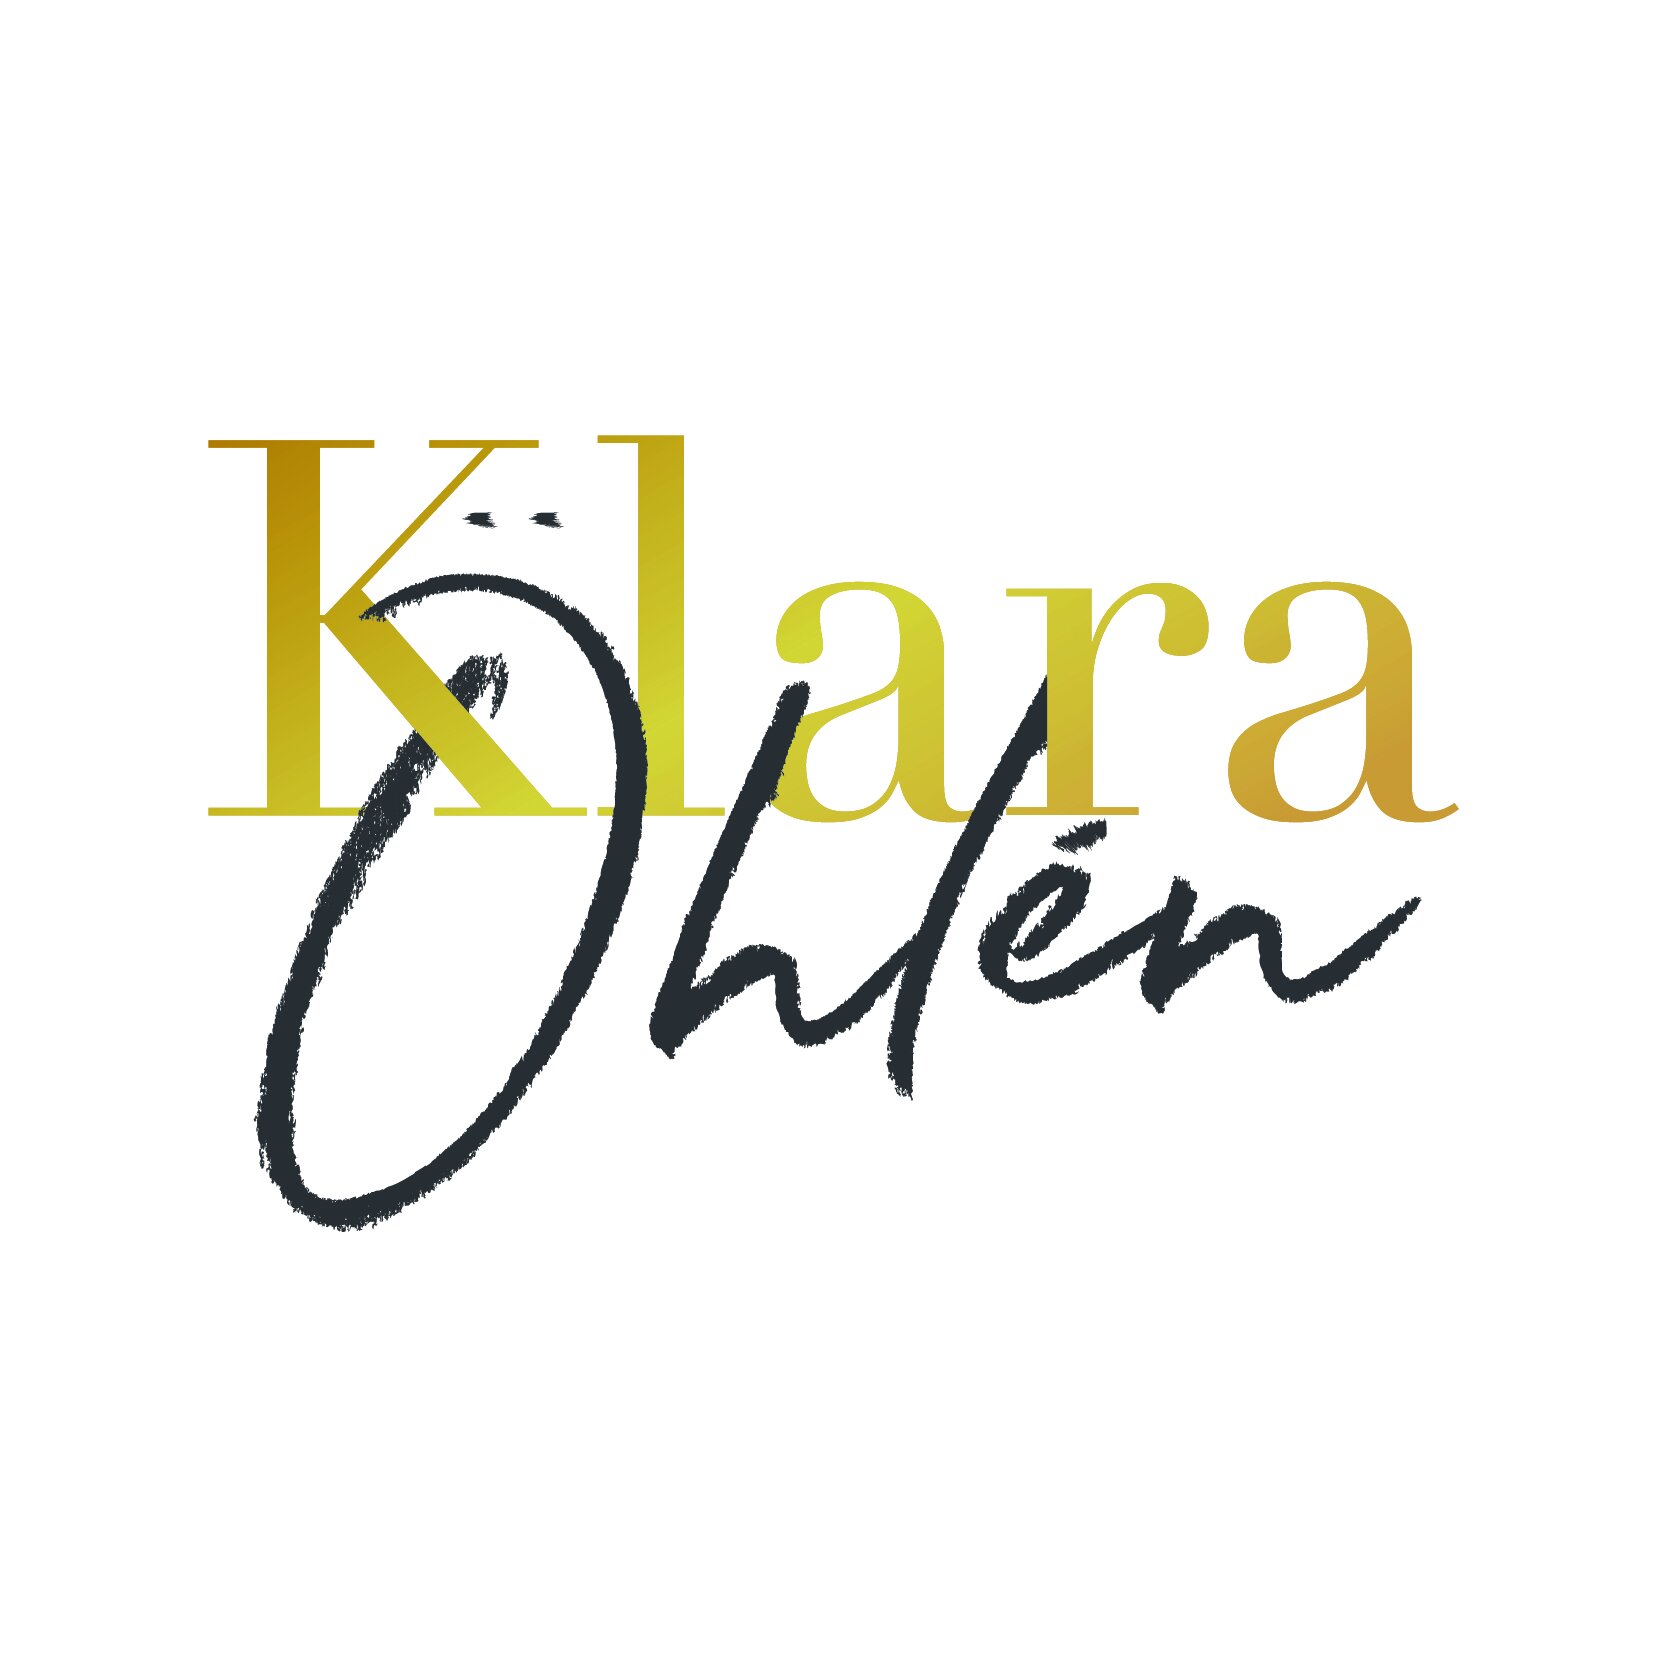 KlaraOhlen_logo-1.jpg